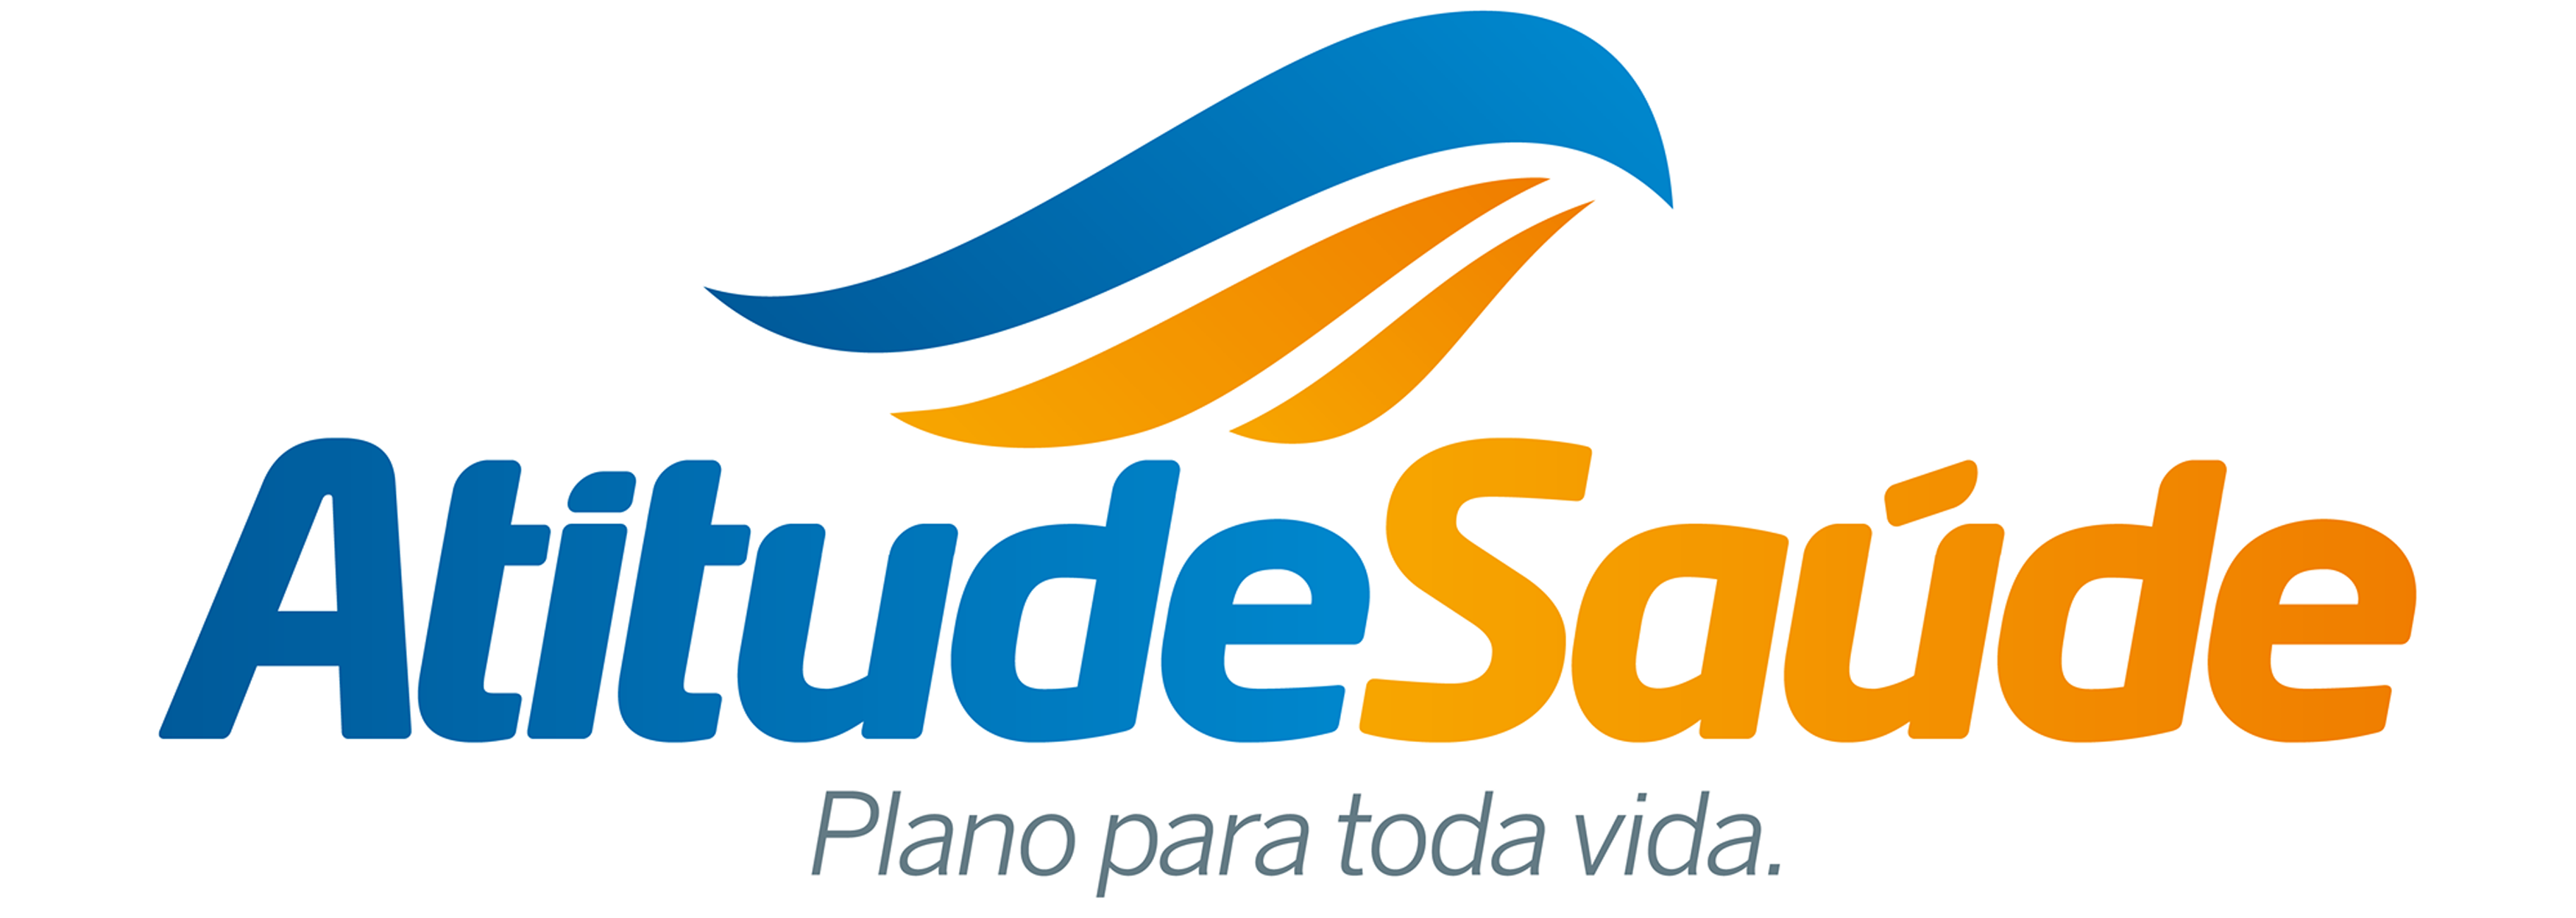 AtitudelSaude-logo